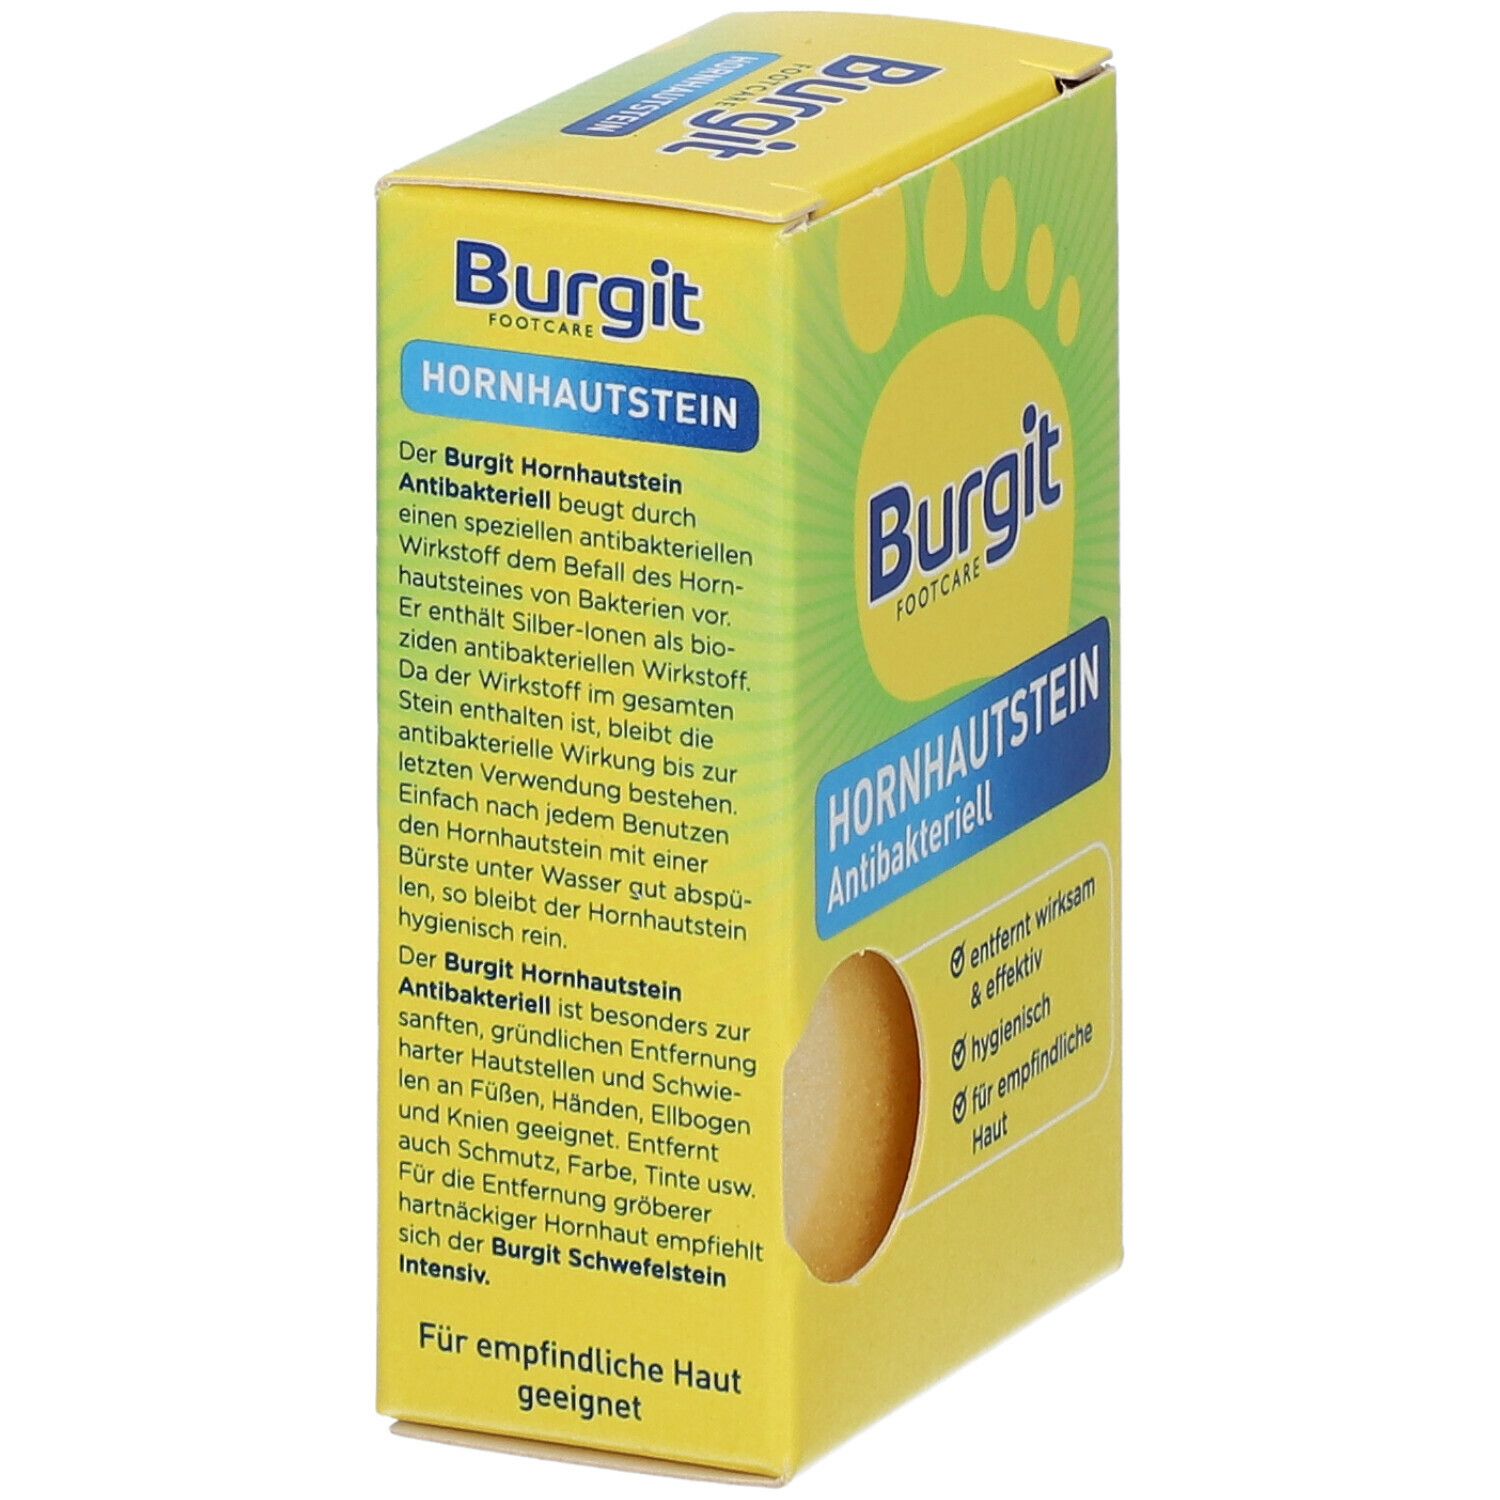 Burgit Hornhautstein Antibakteriell